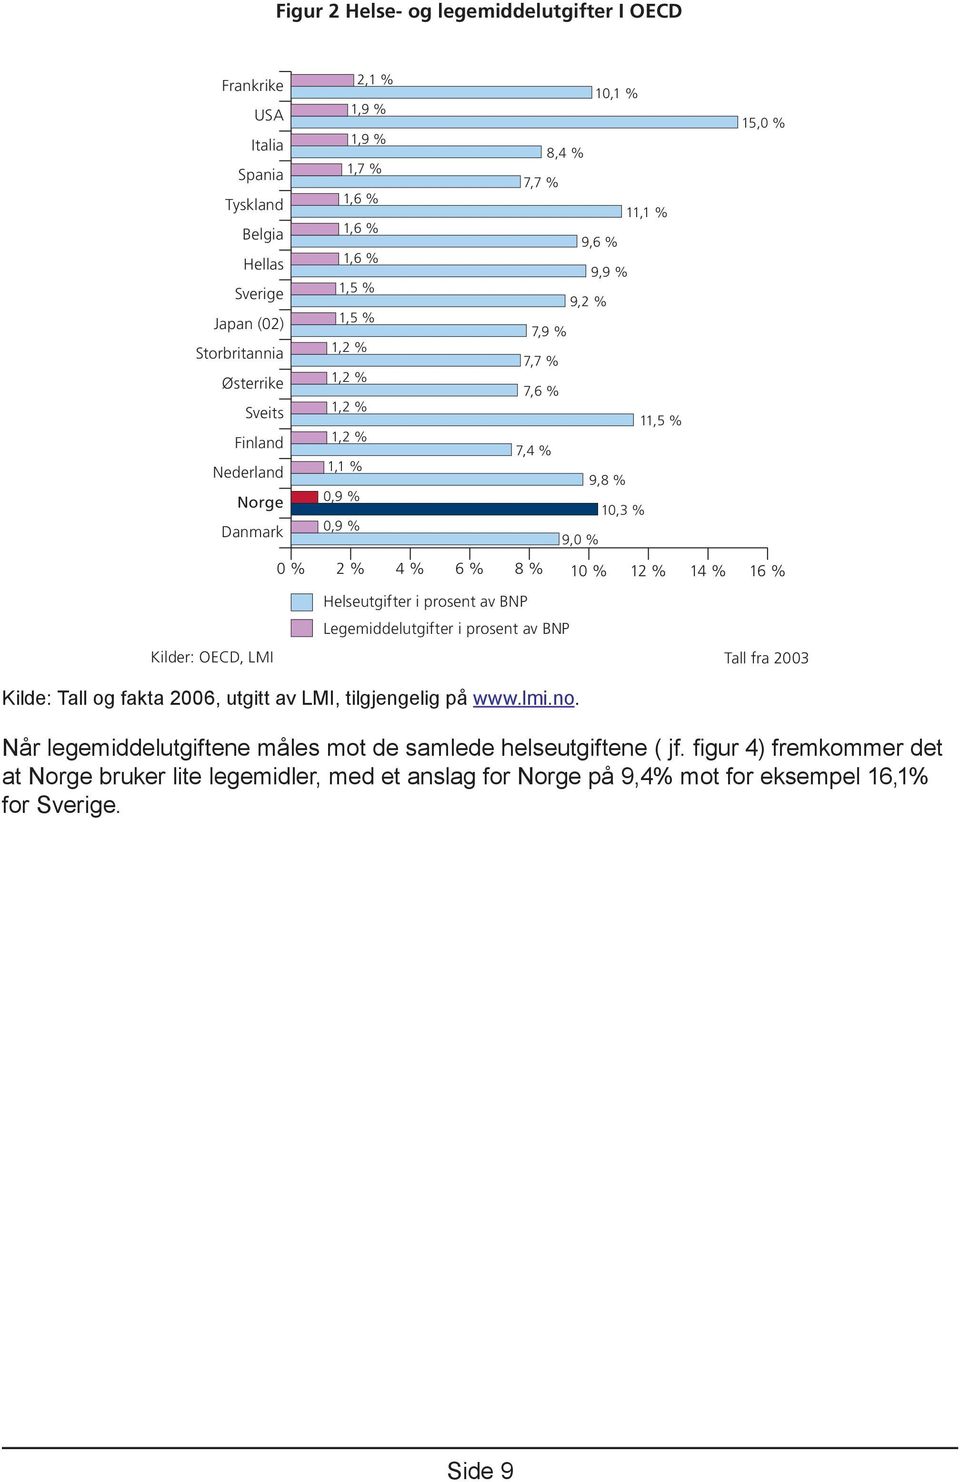 8 % 10 % 12 % 14 % 16 % Helseutgifter i prosent av BNP Legemiddelutgifter i prosent av BNP Kilder: OECD, LMI Tall fra 2003 Kilde: Tall og fakta 2006, utgitt av LMI, tilgjengelig på www.lmi.no.